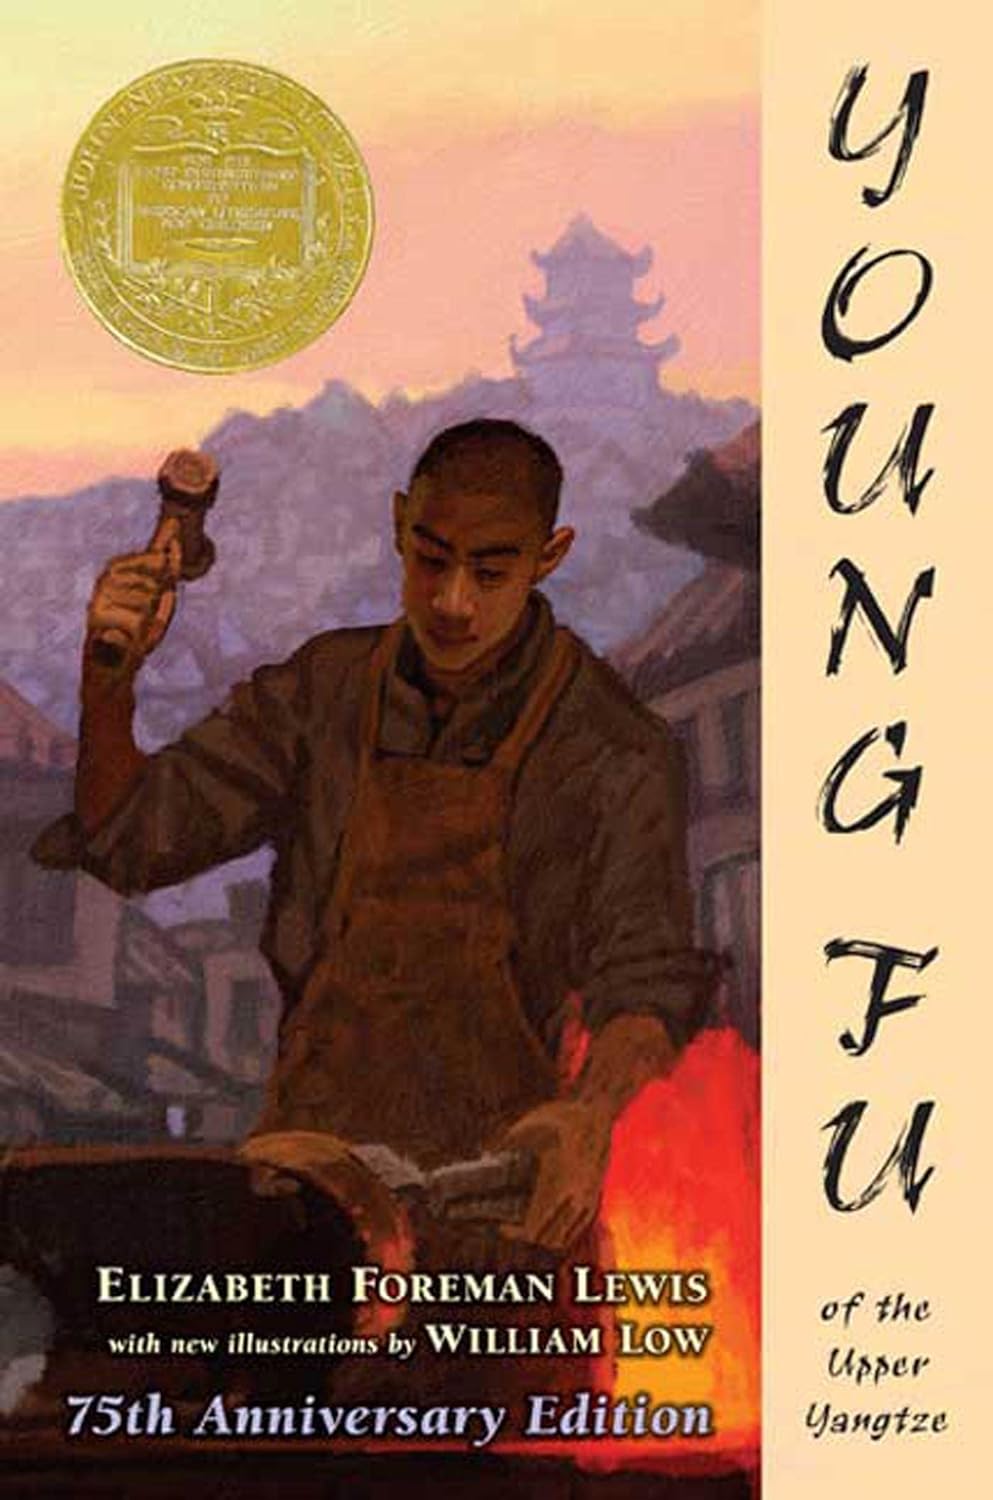 Newbery 수상작 Young Fu of the Upper Yangtze